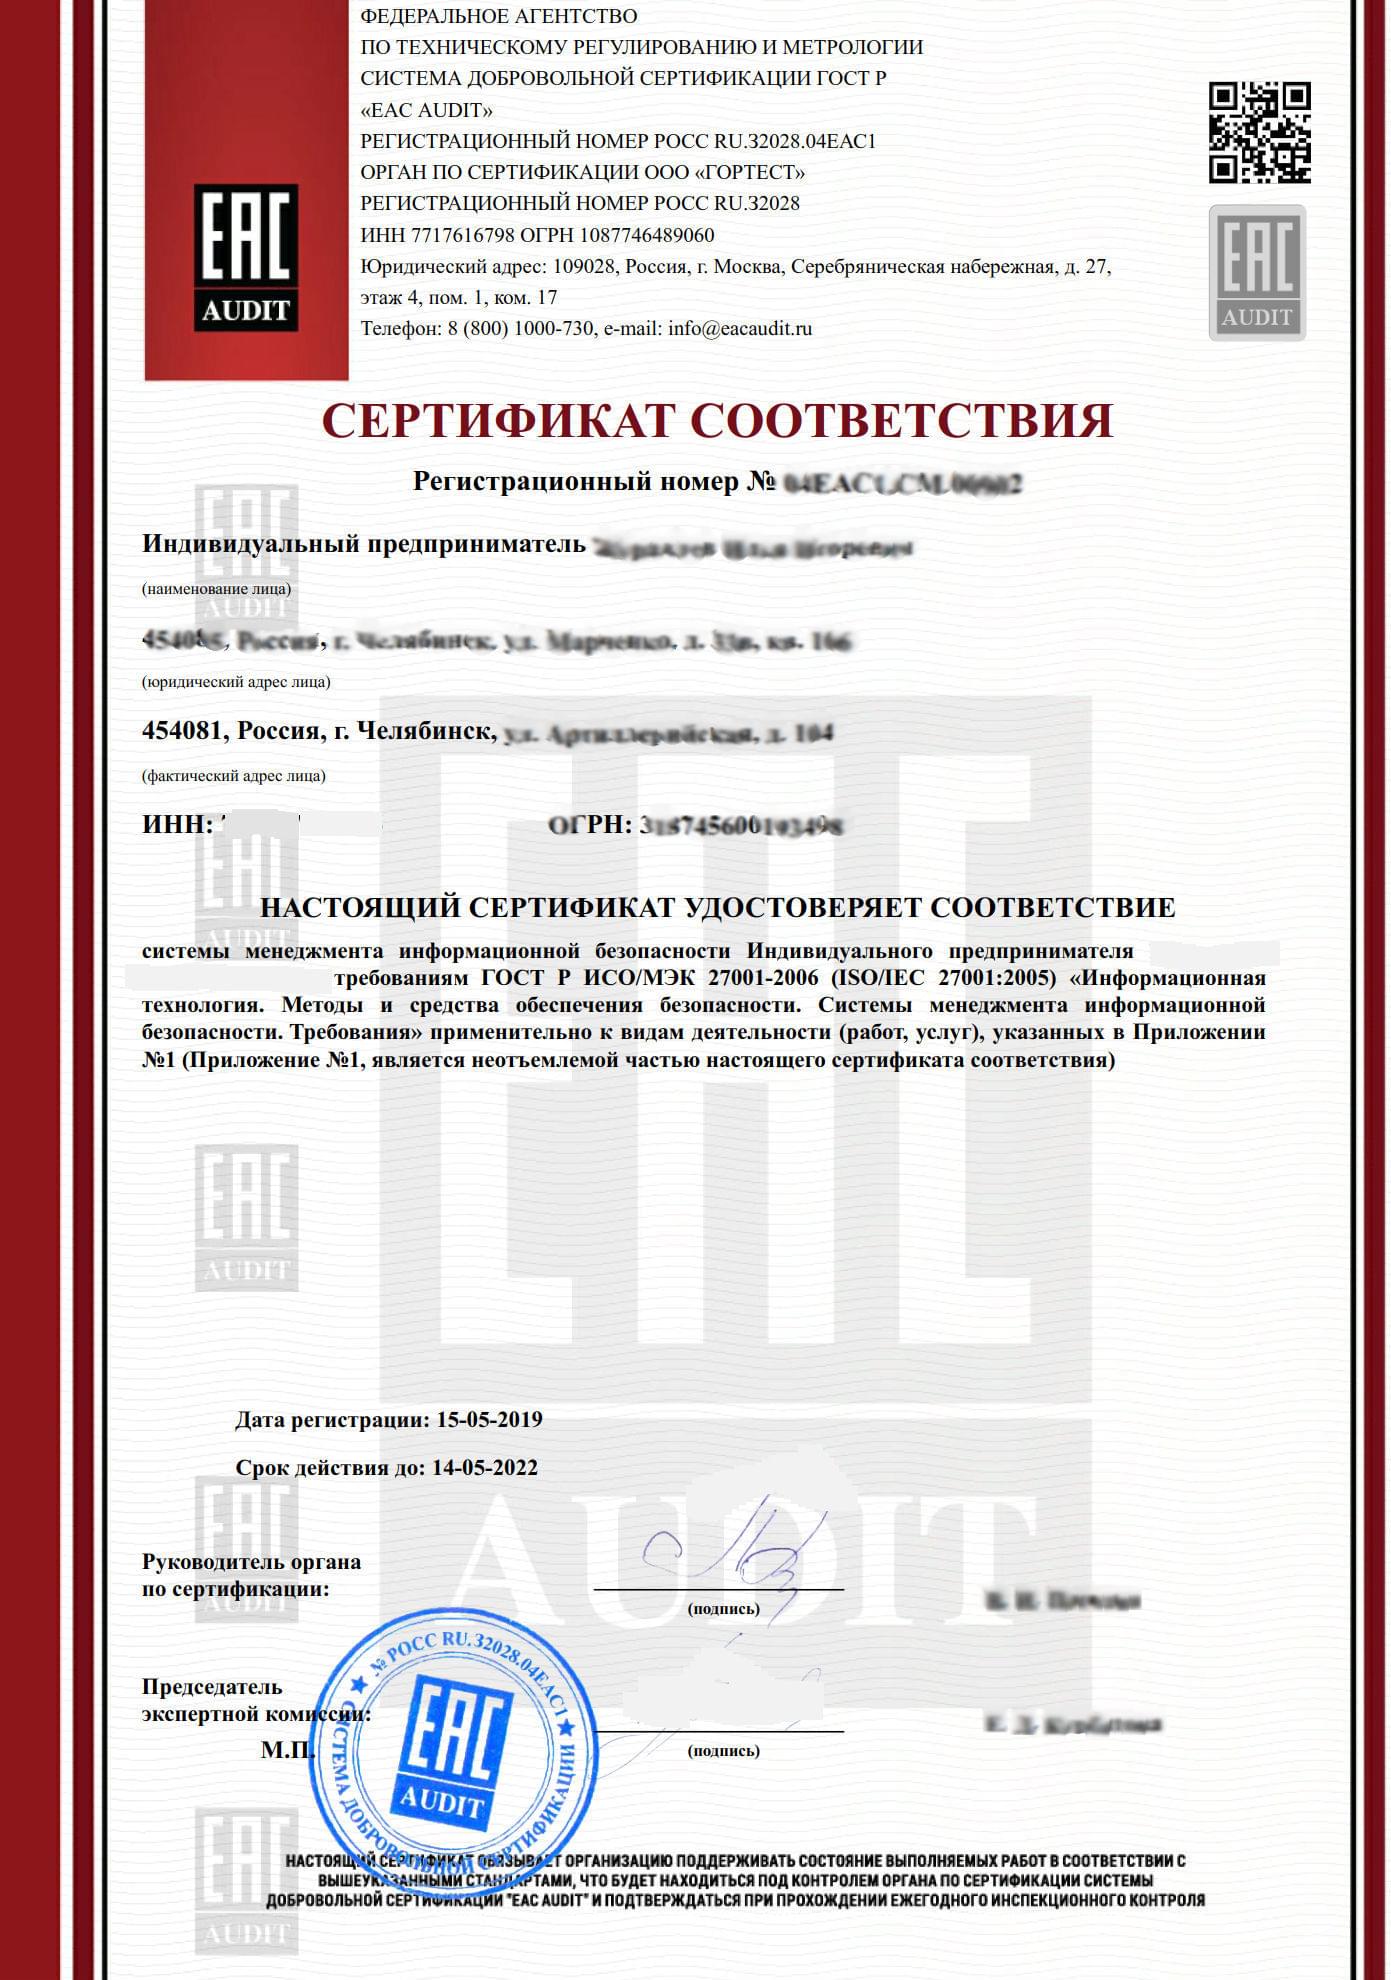 Сертификат ГОСТ Р ИСО/МЭК 27001-2006: